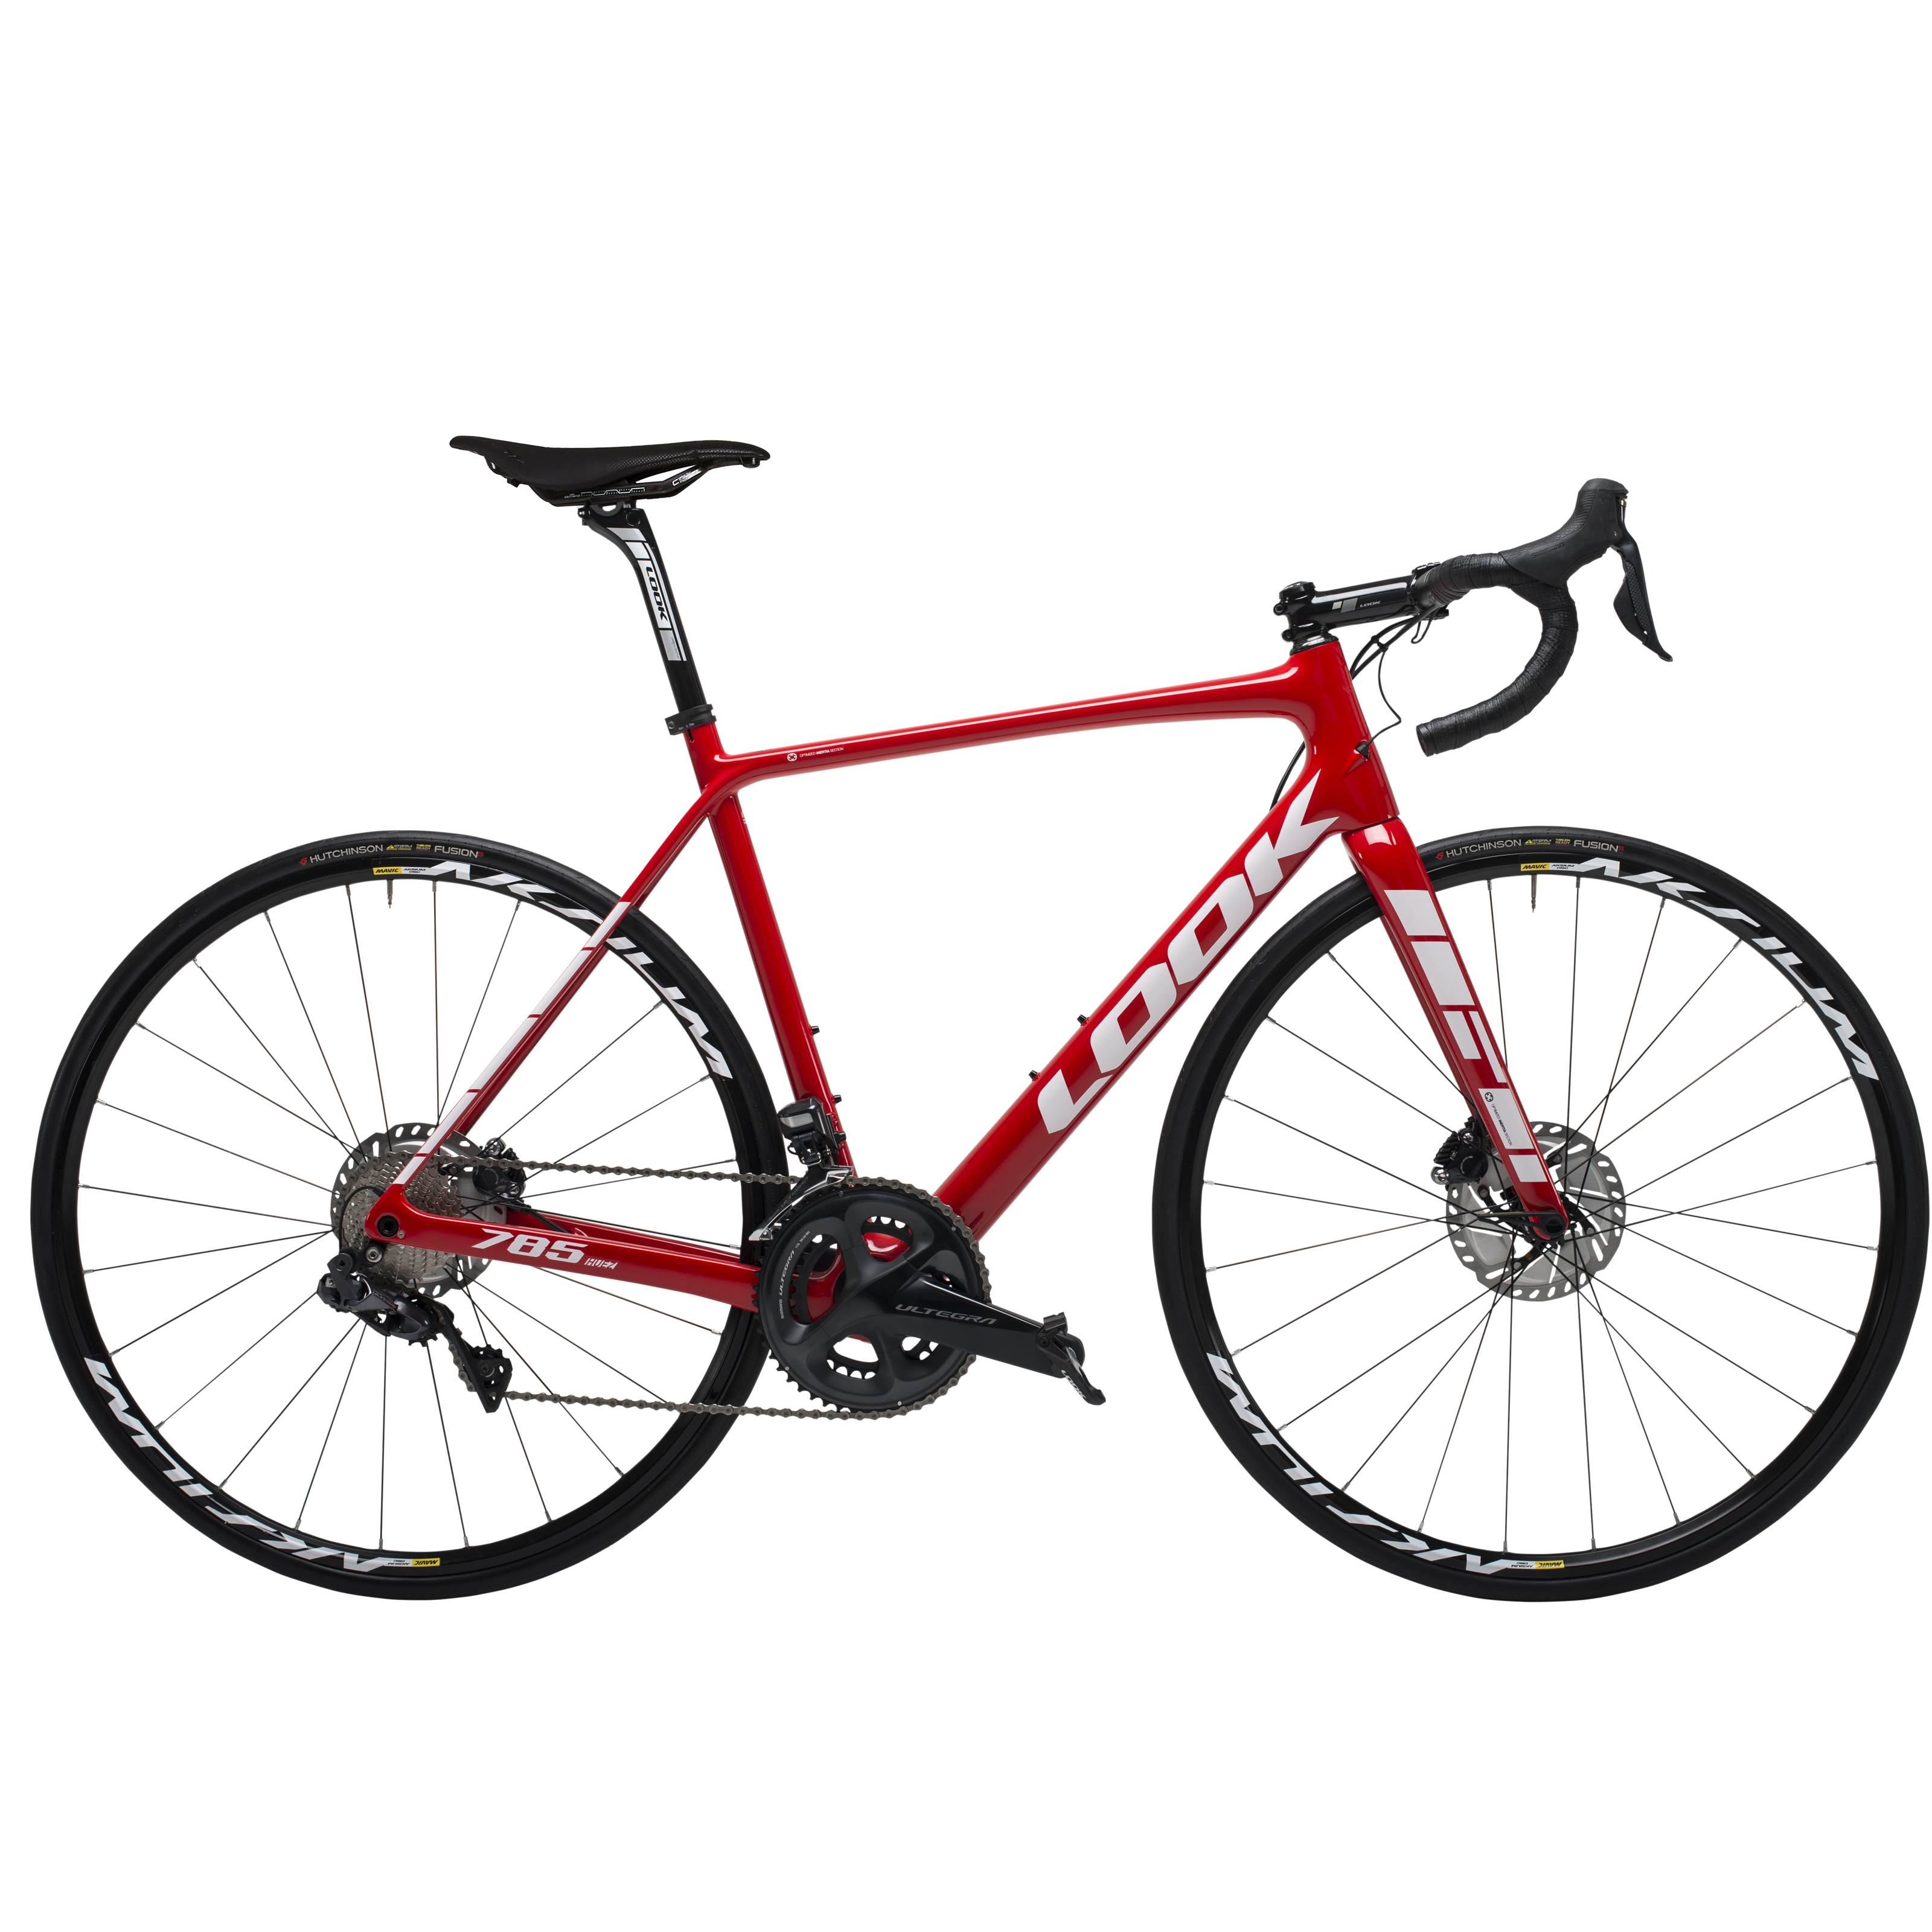 Bicicleta LOOK Ruta 785 HUEZ R700 22V. Shimano Ultegra DI2 Aksium Elite Tubeless Fibra de Carbono Rojo Brillante Talla:MM (00019513)